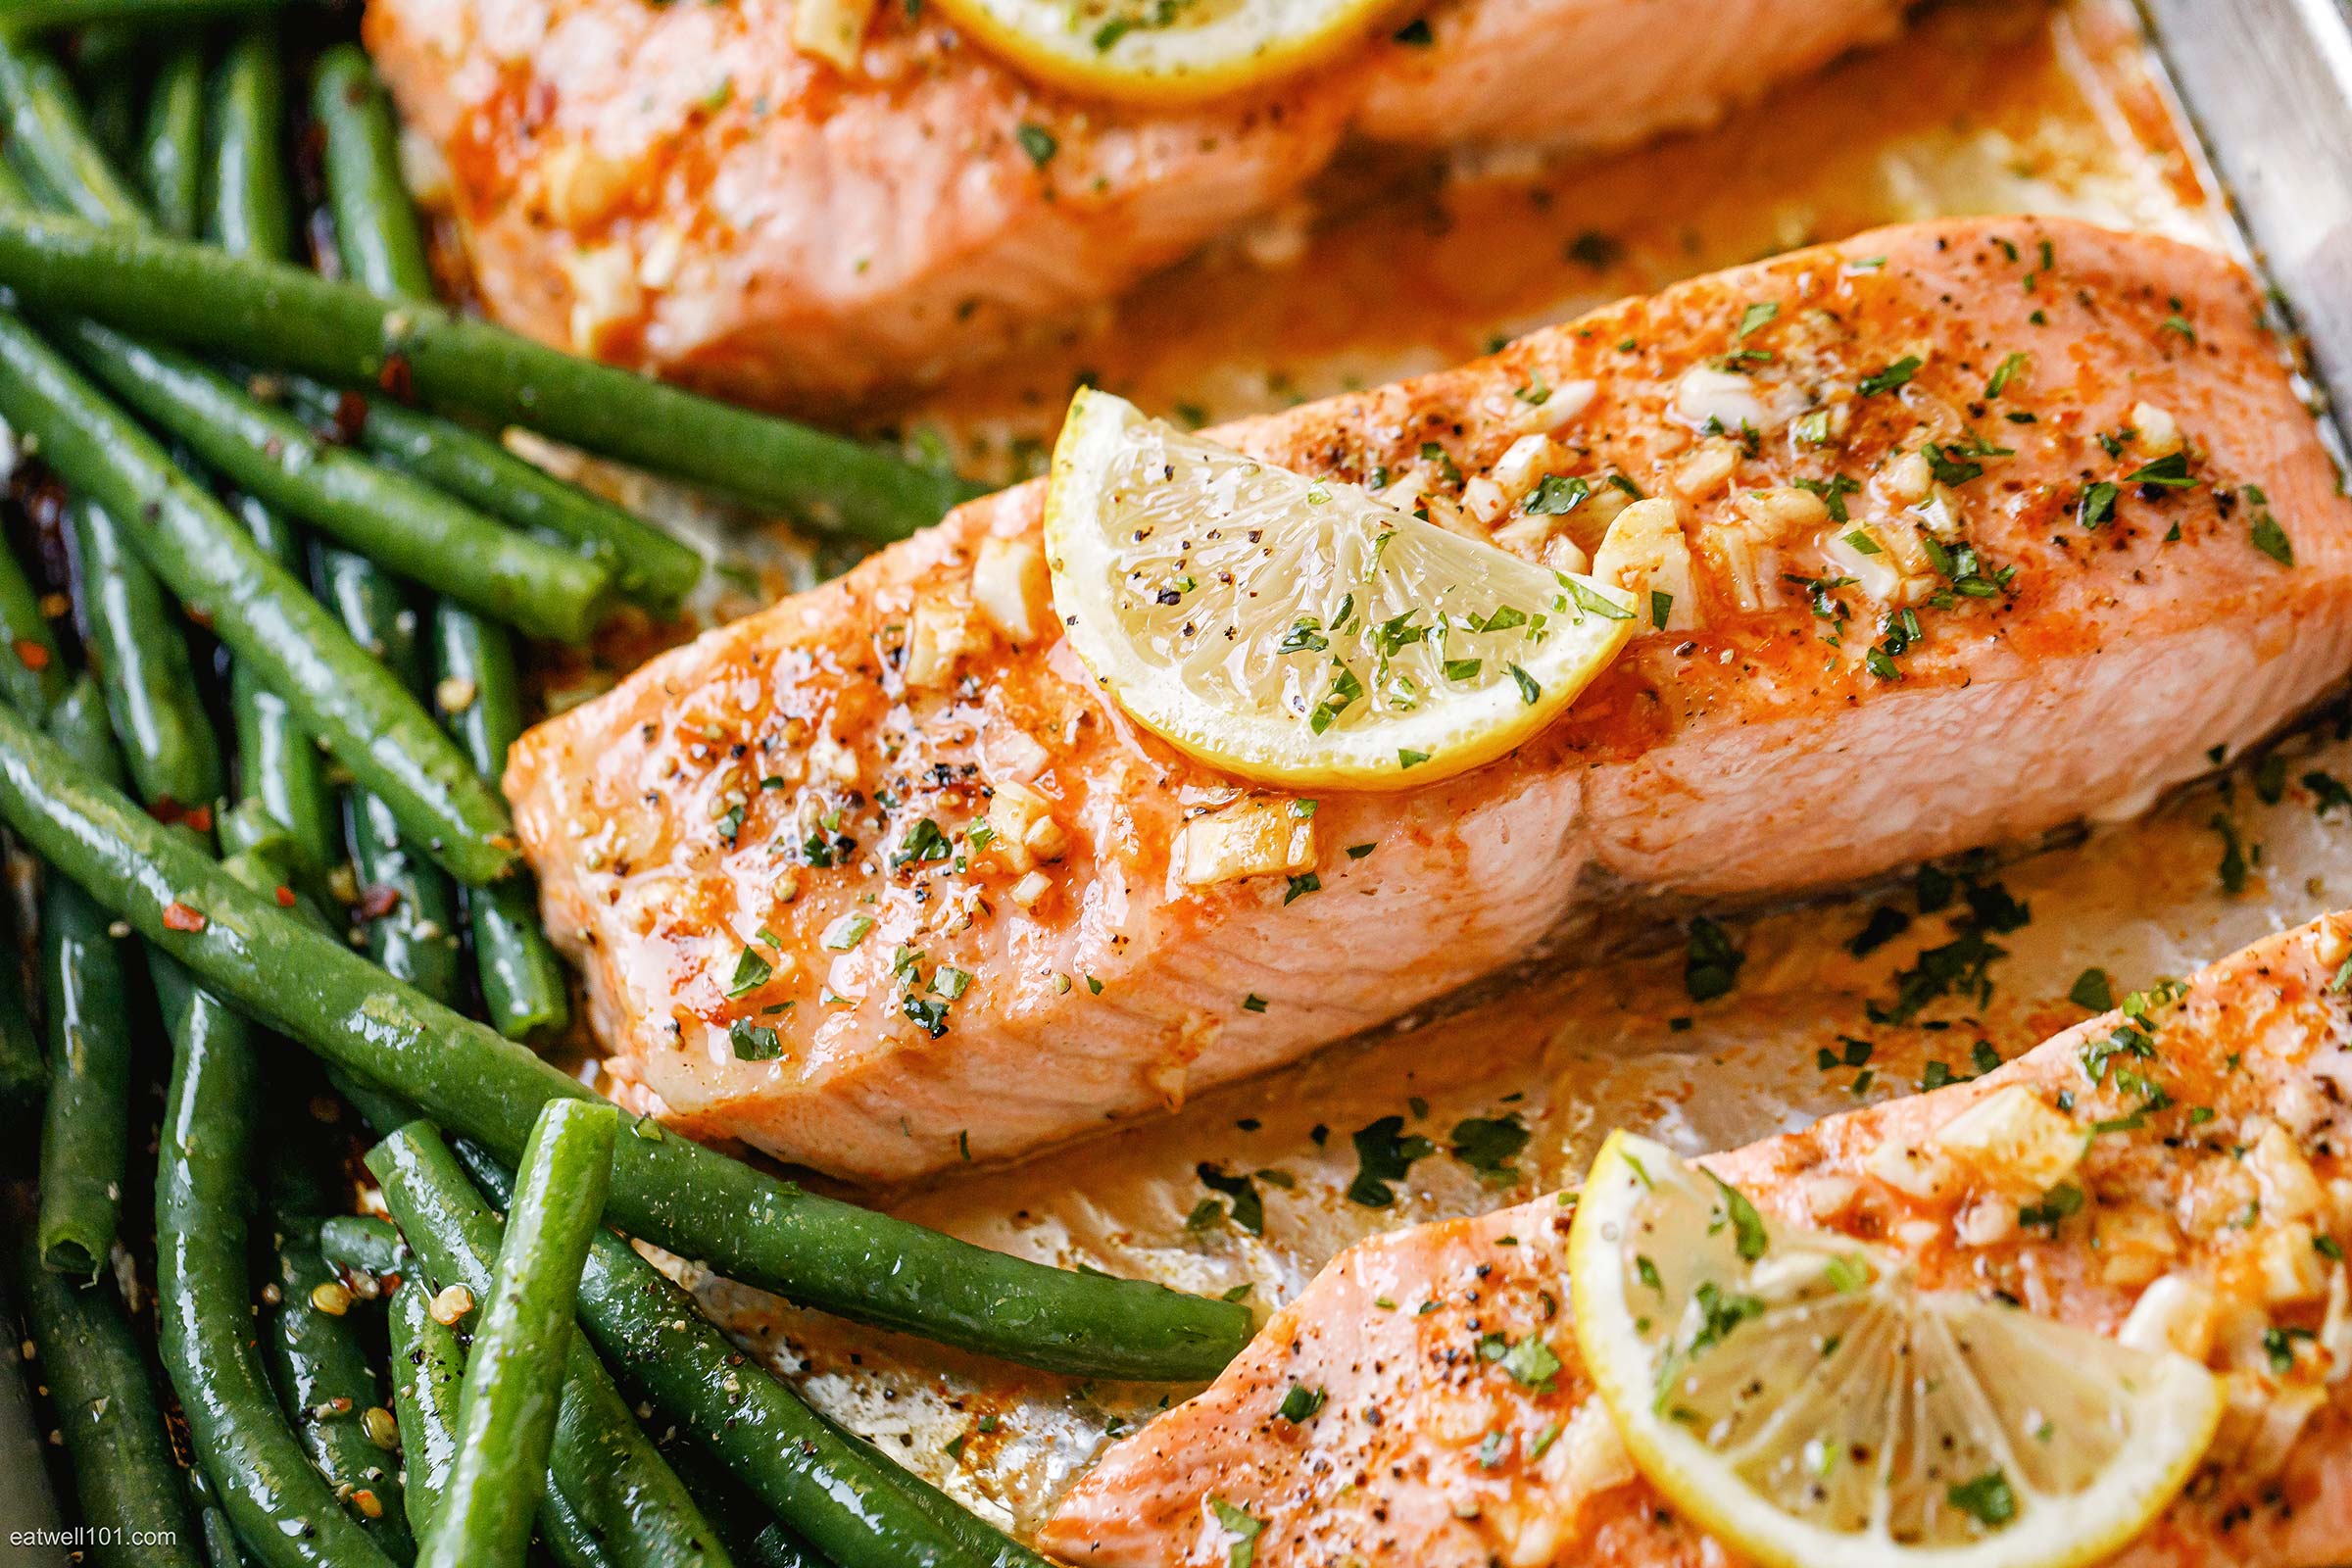 7 Baked Salmon Recipe Ideas for Dinner